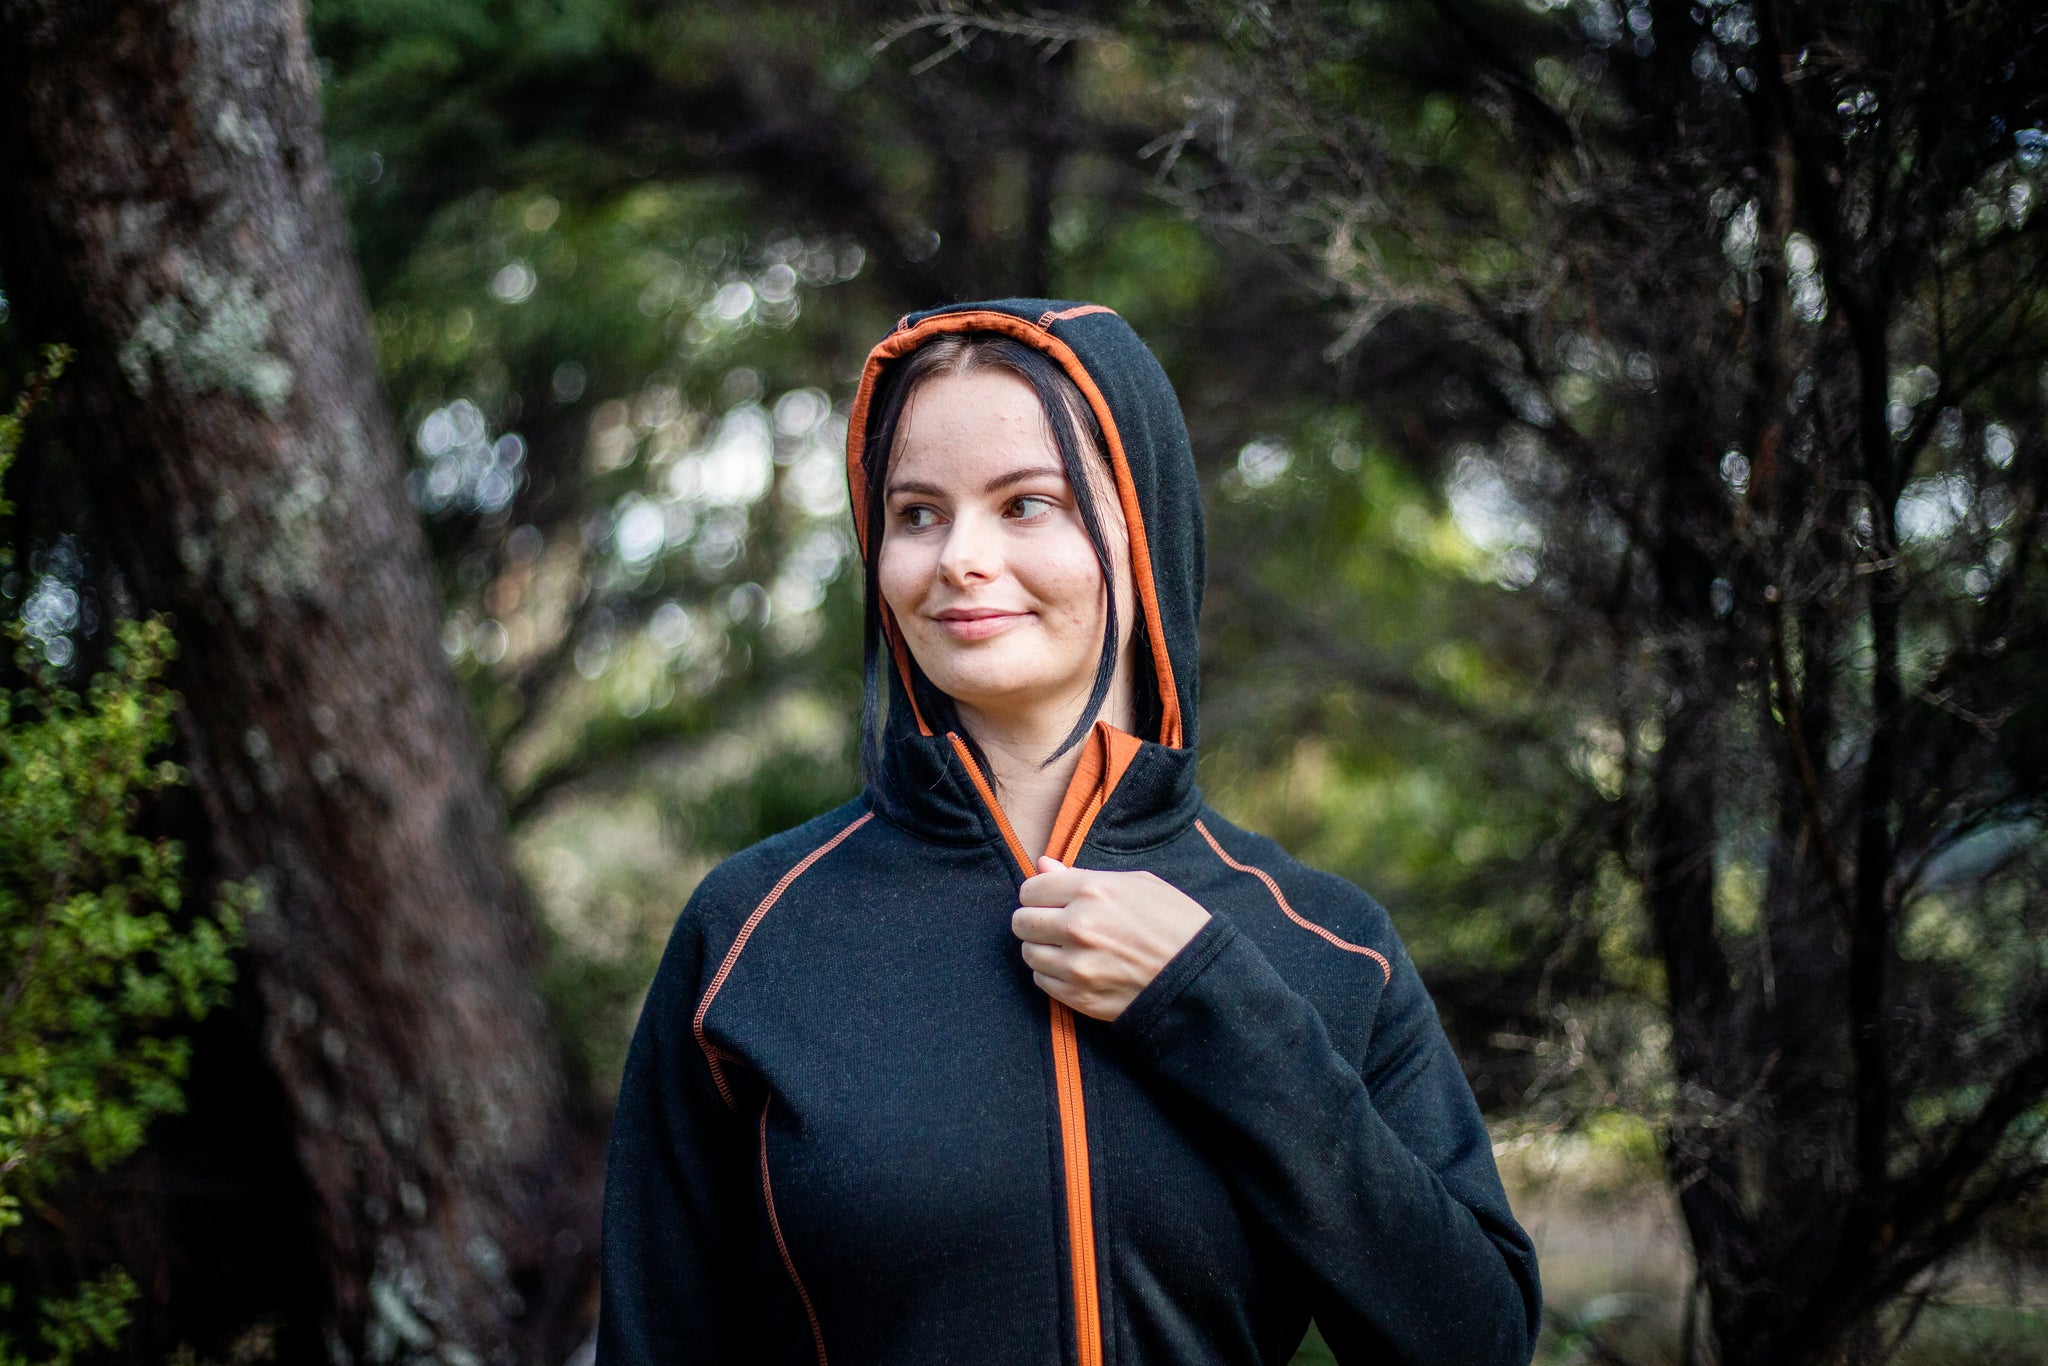 Ladies Merino/Tencel Full Zip Jacket with Hood. Made in New Zealand.